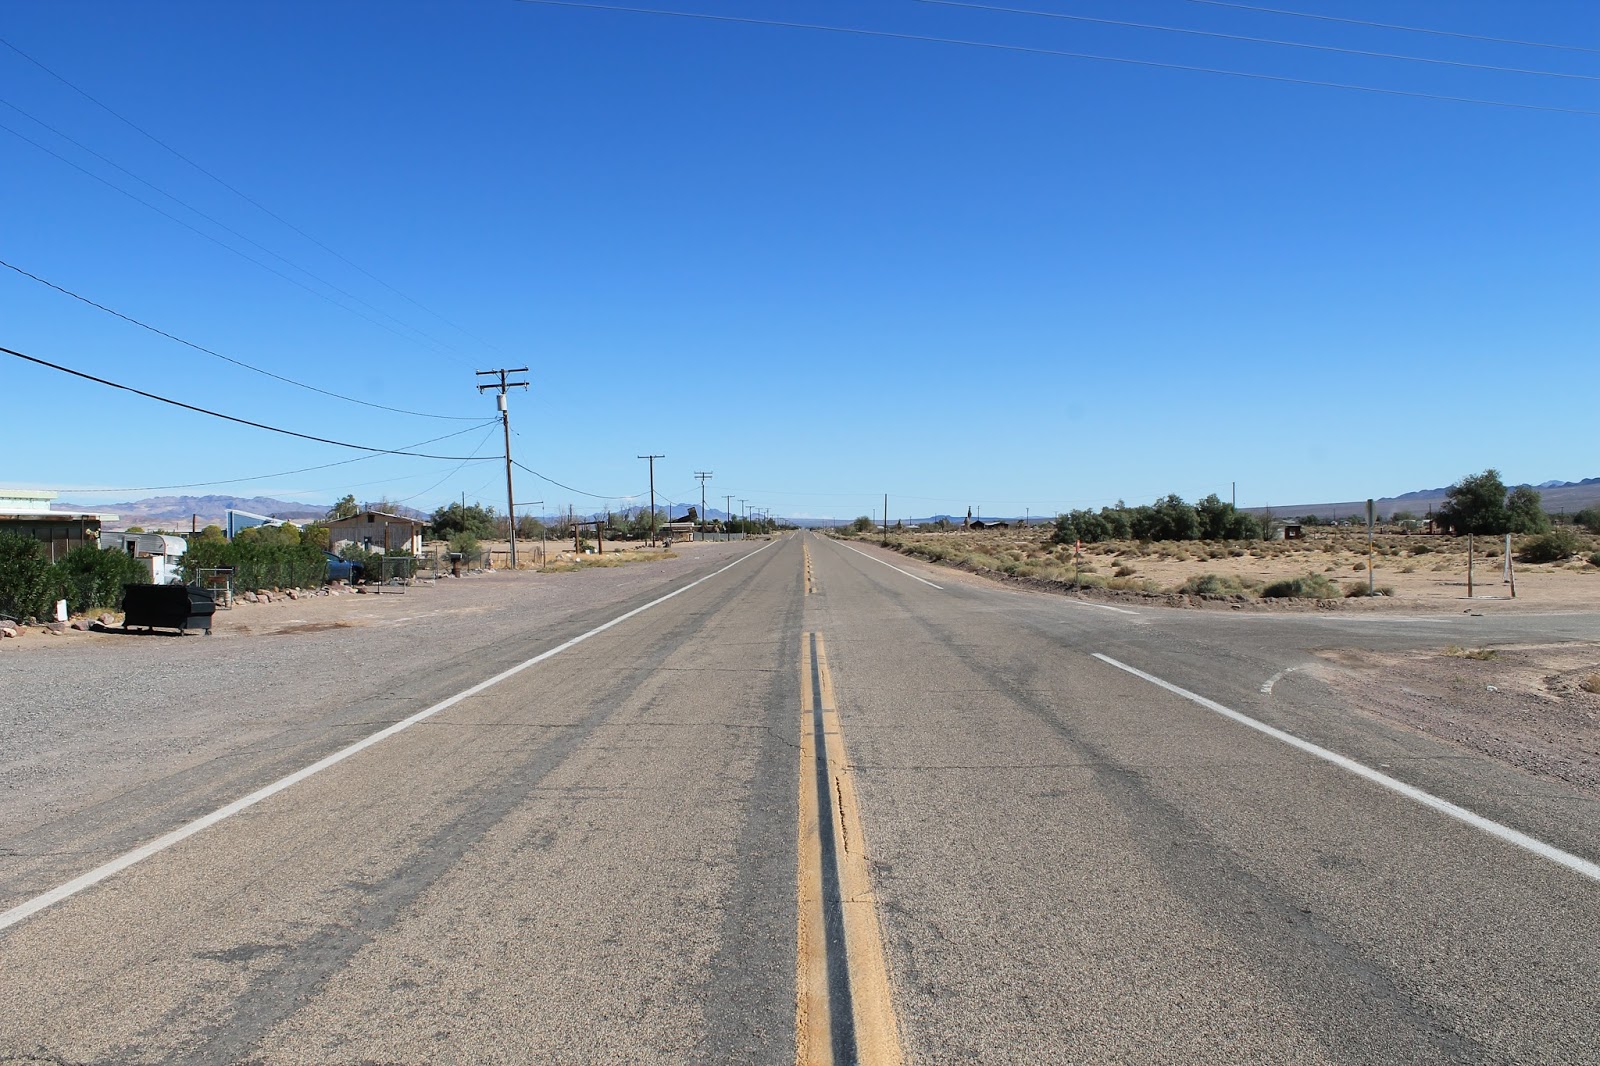 USA états unis amérique vacance transat roadtrip ouest américain road 66 route